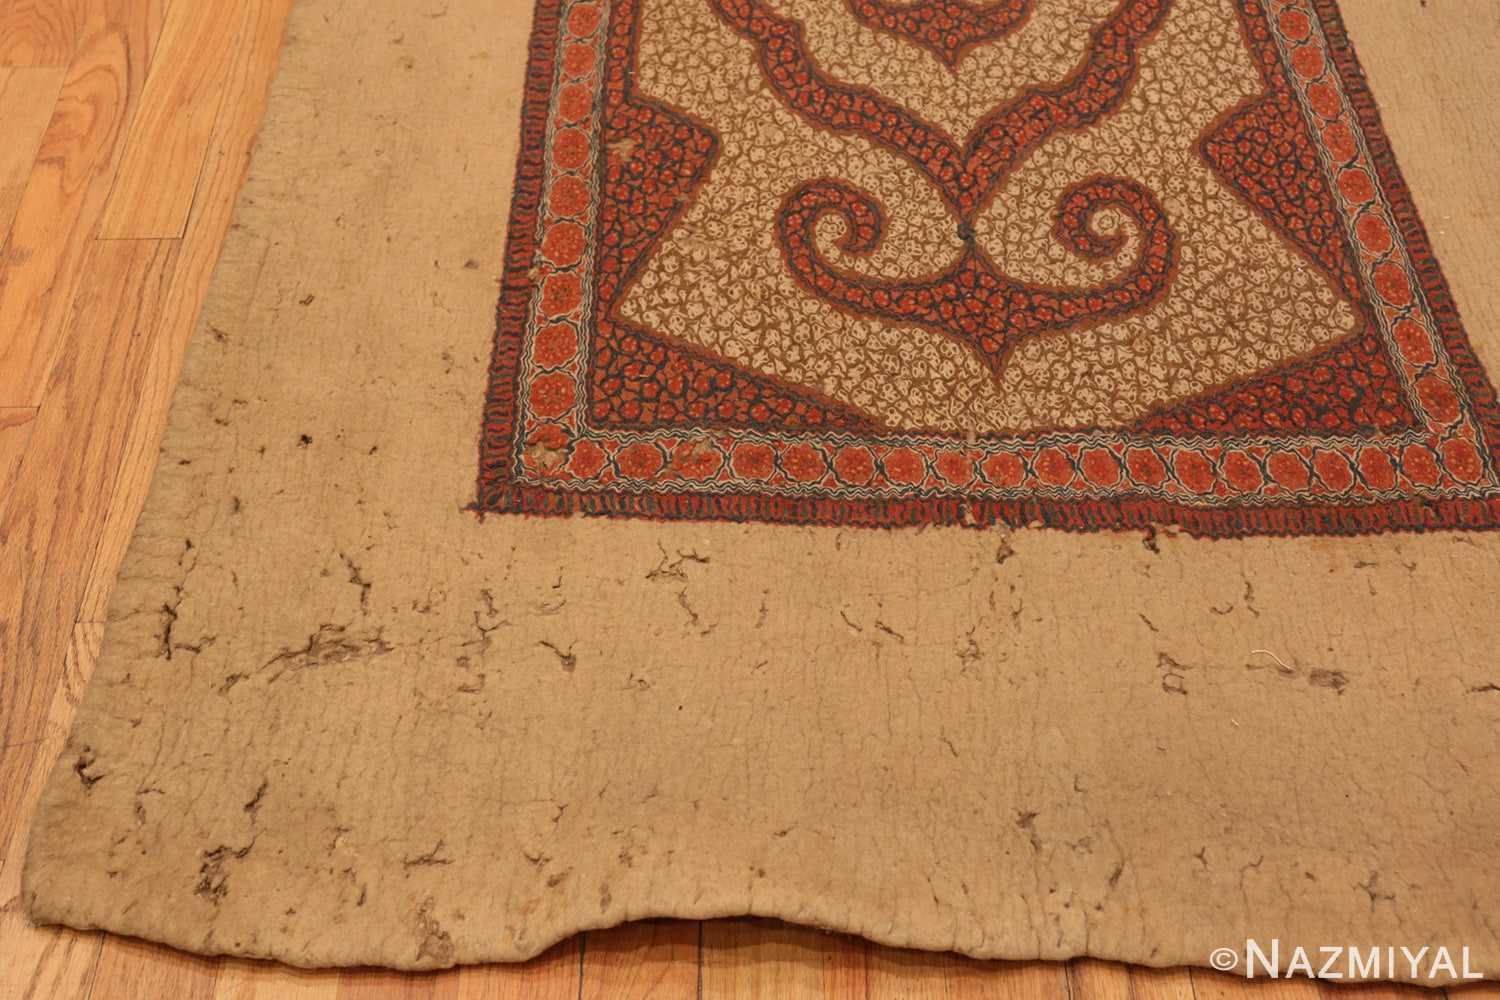 Corner Antique Central Asia felt rug 41408 by Nazmiyal